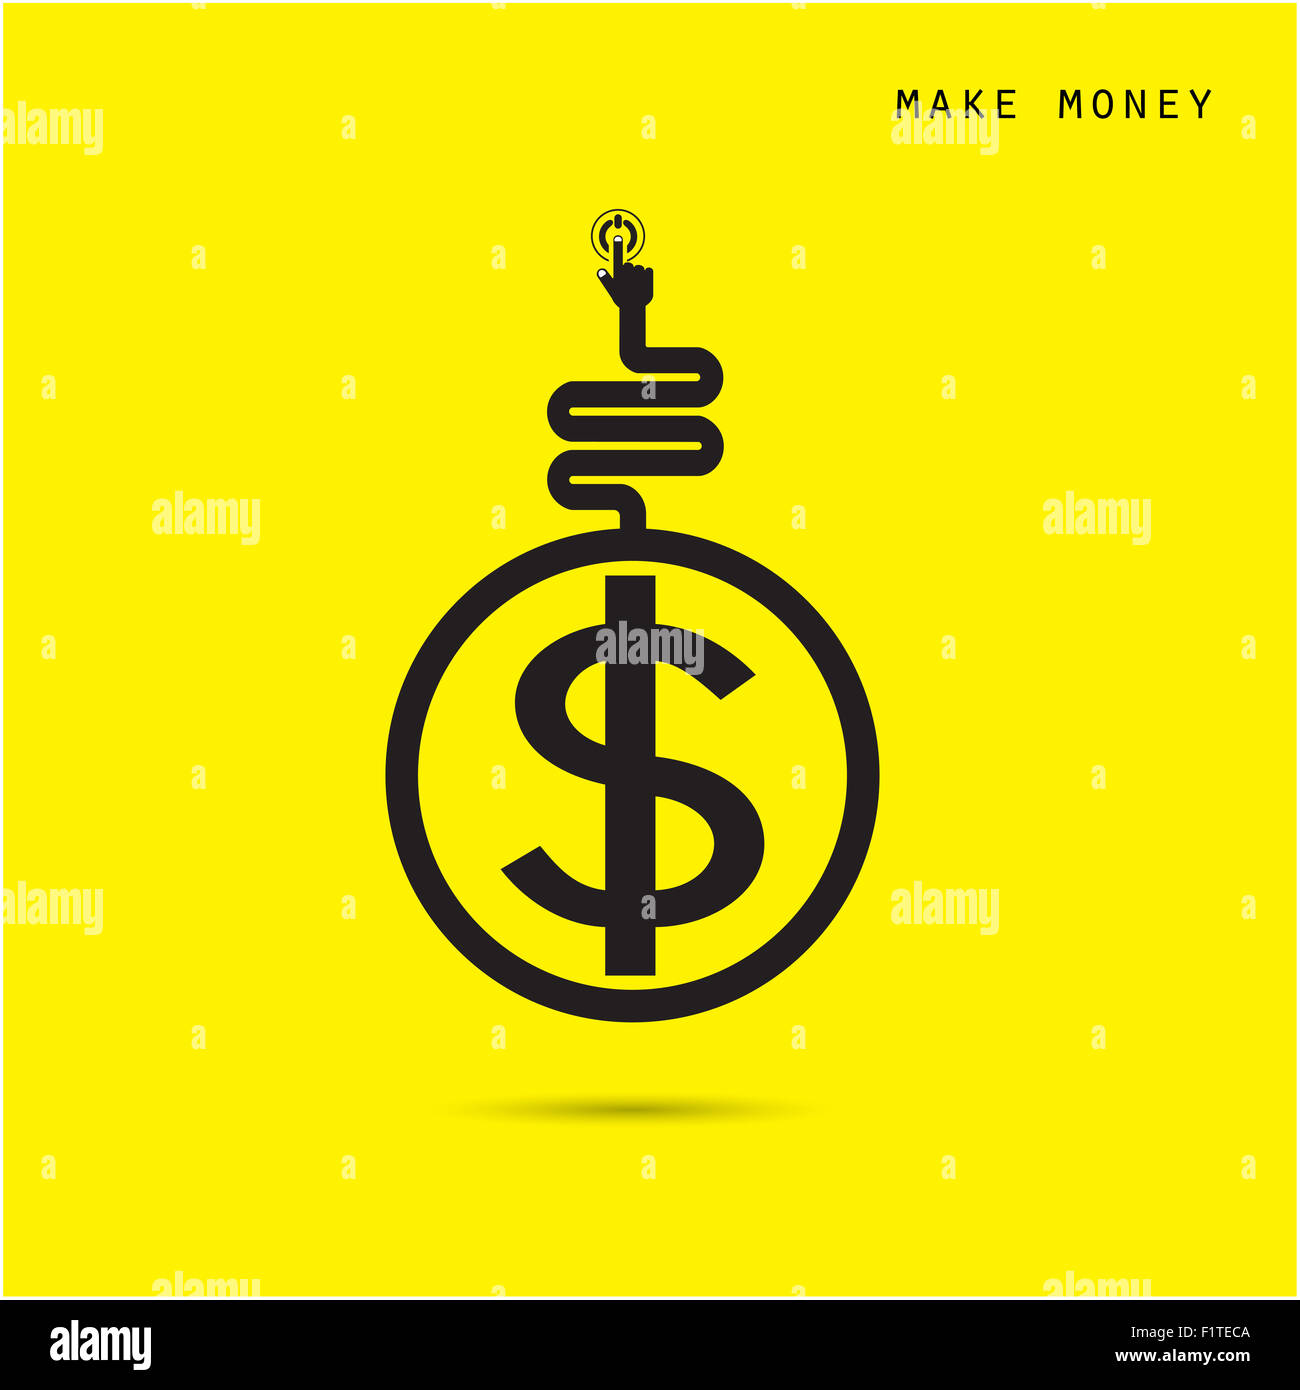 Kreative Finanz- und Logo Design Vorlage, Business und Industrie-Konzept. Stockfoto